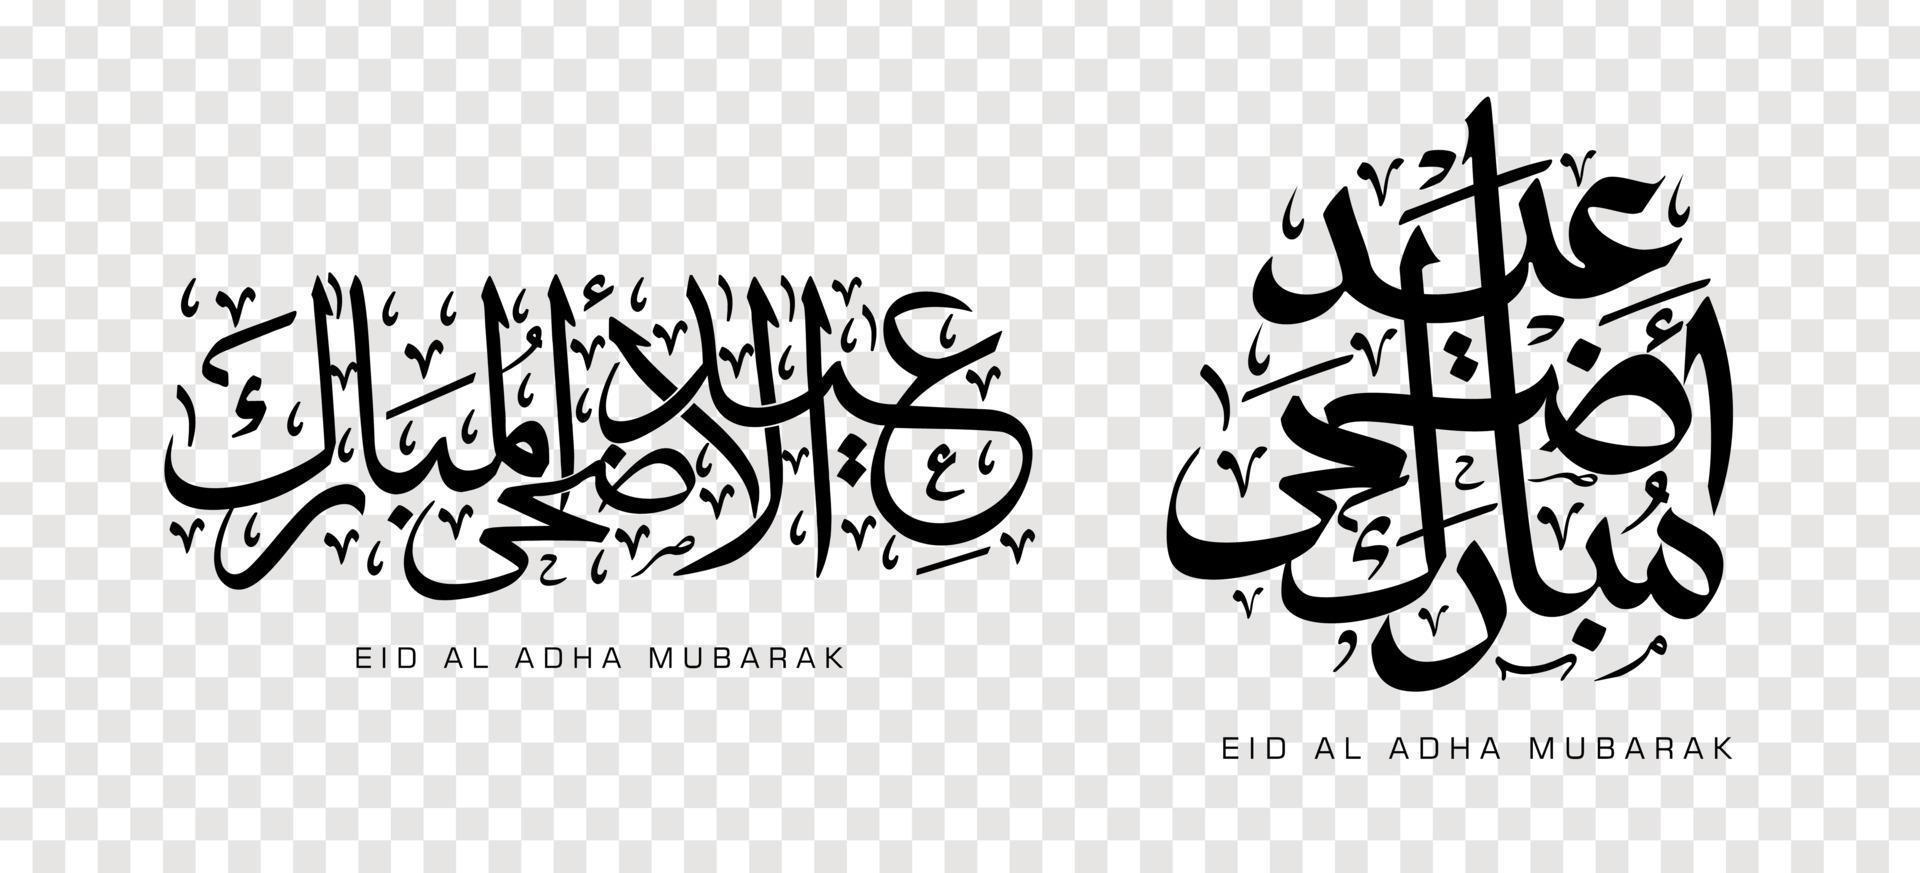 conjunto de eid adha mubarak em caligrafia árabe, elemento de design. ilustração vetorial vetor